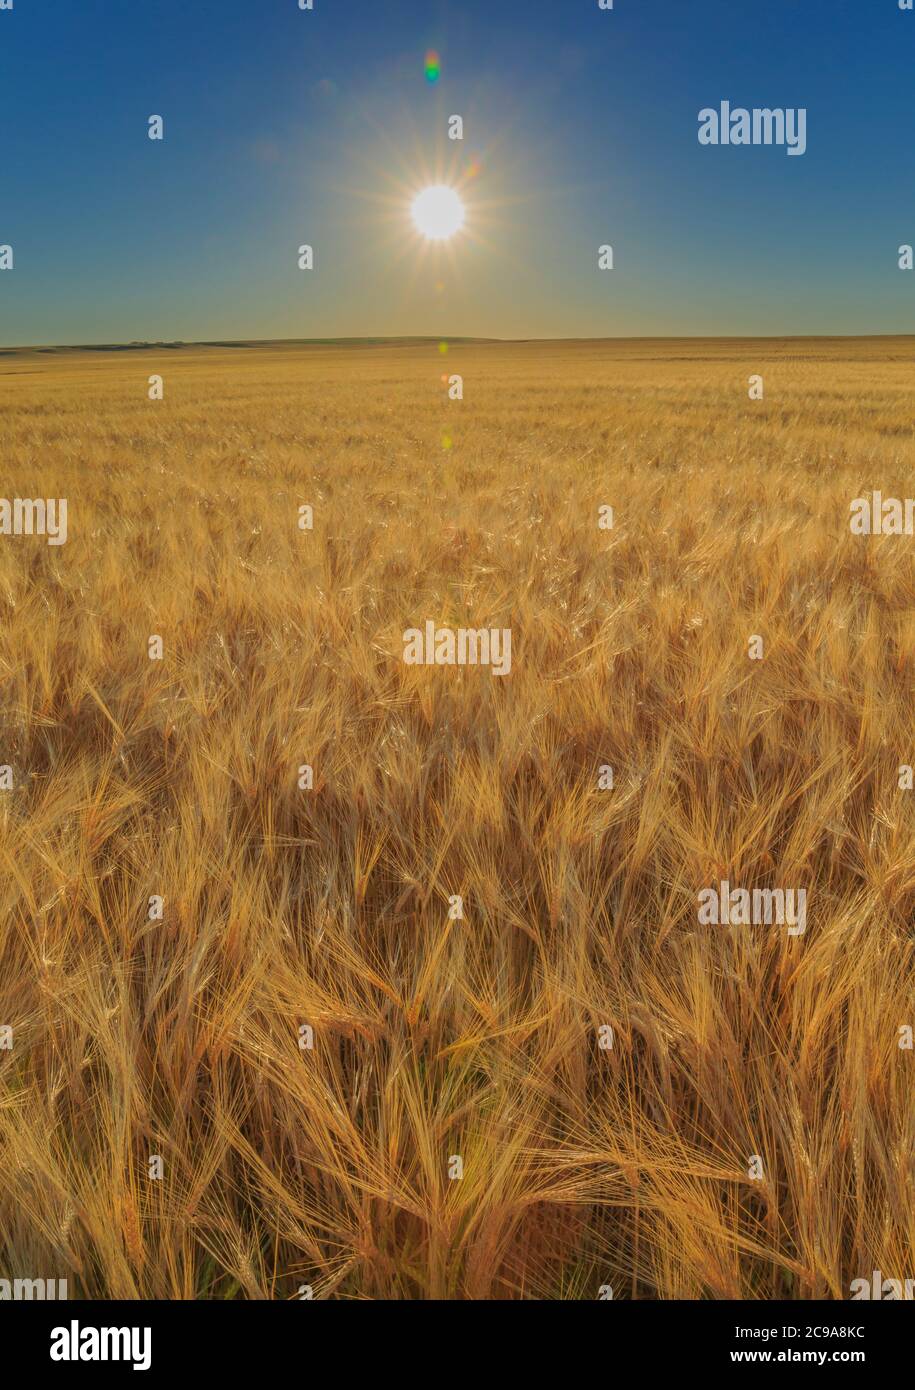 sun flare over a wheat field near ulm, montana Stock Photo